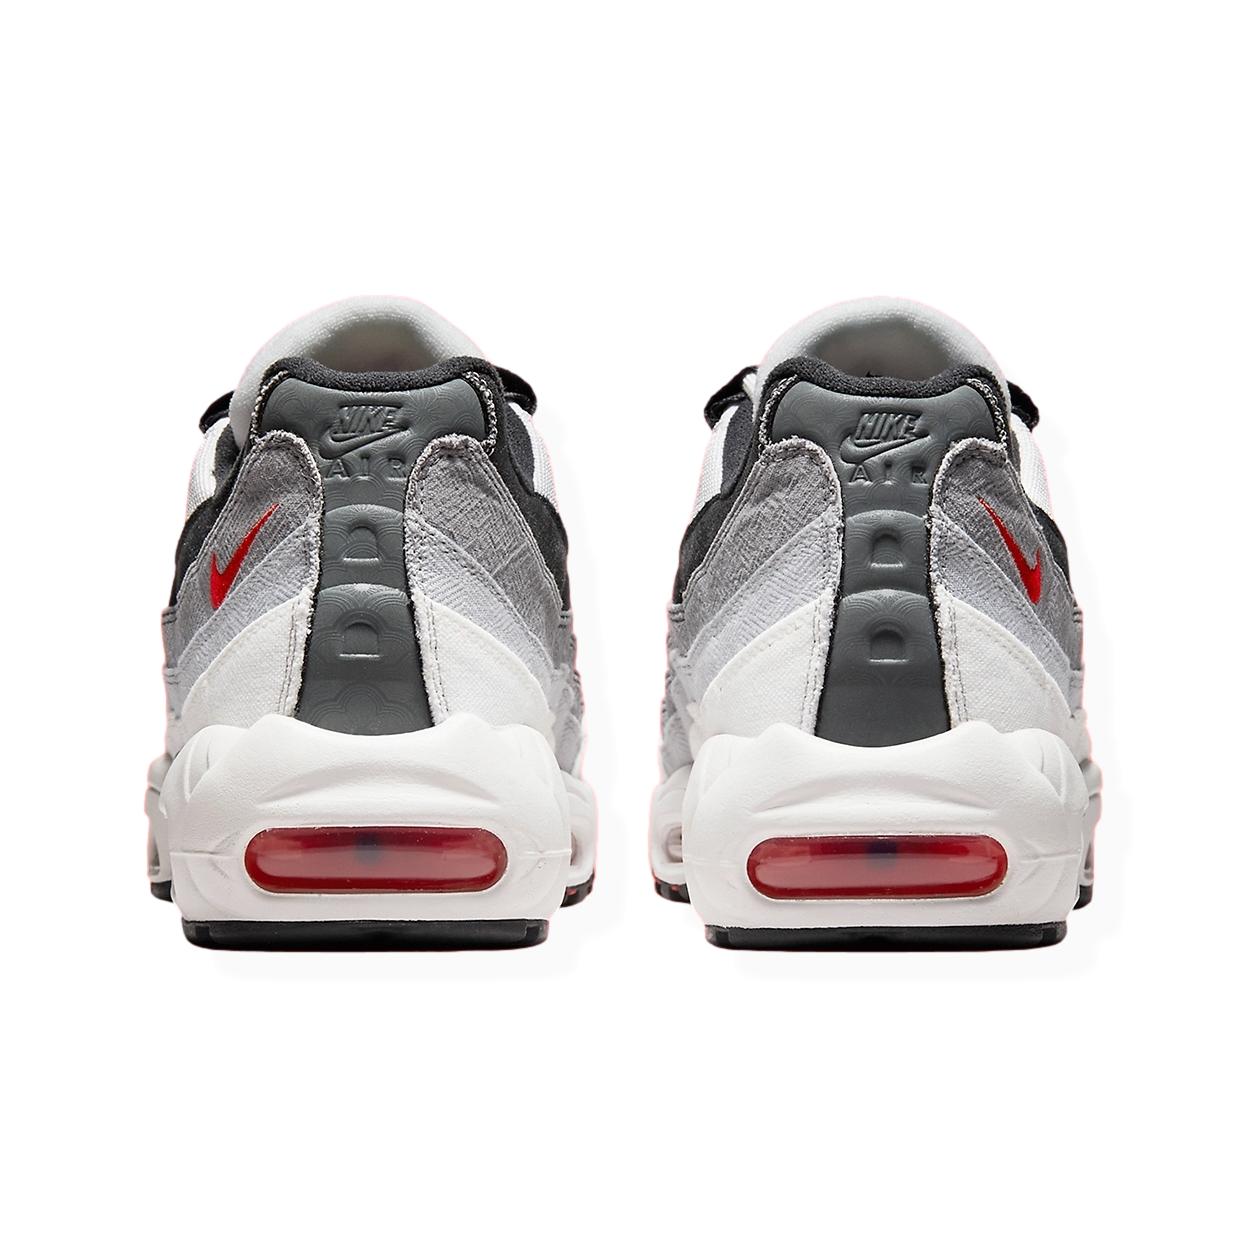 Nike Air Max 95 “Comet”